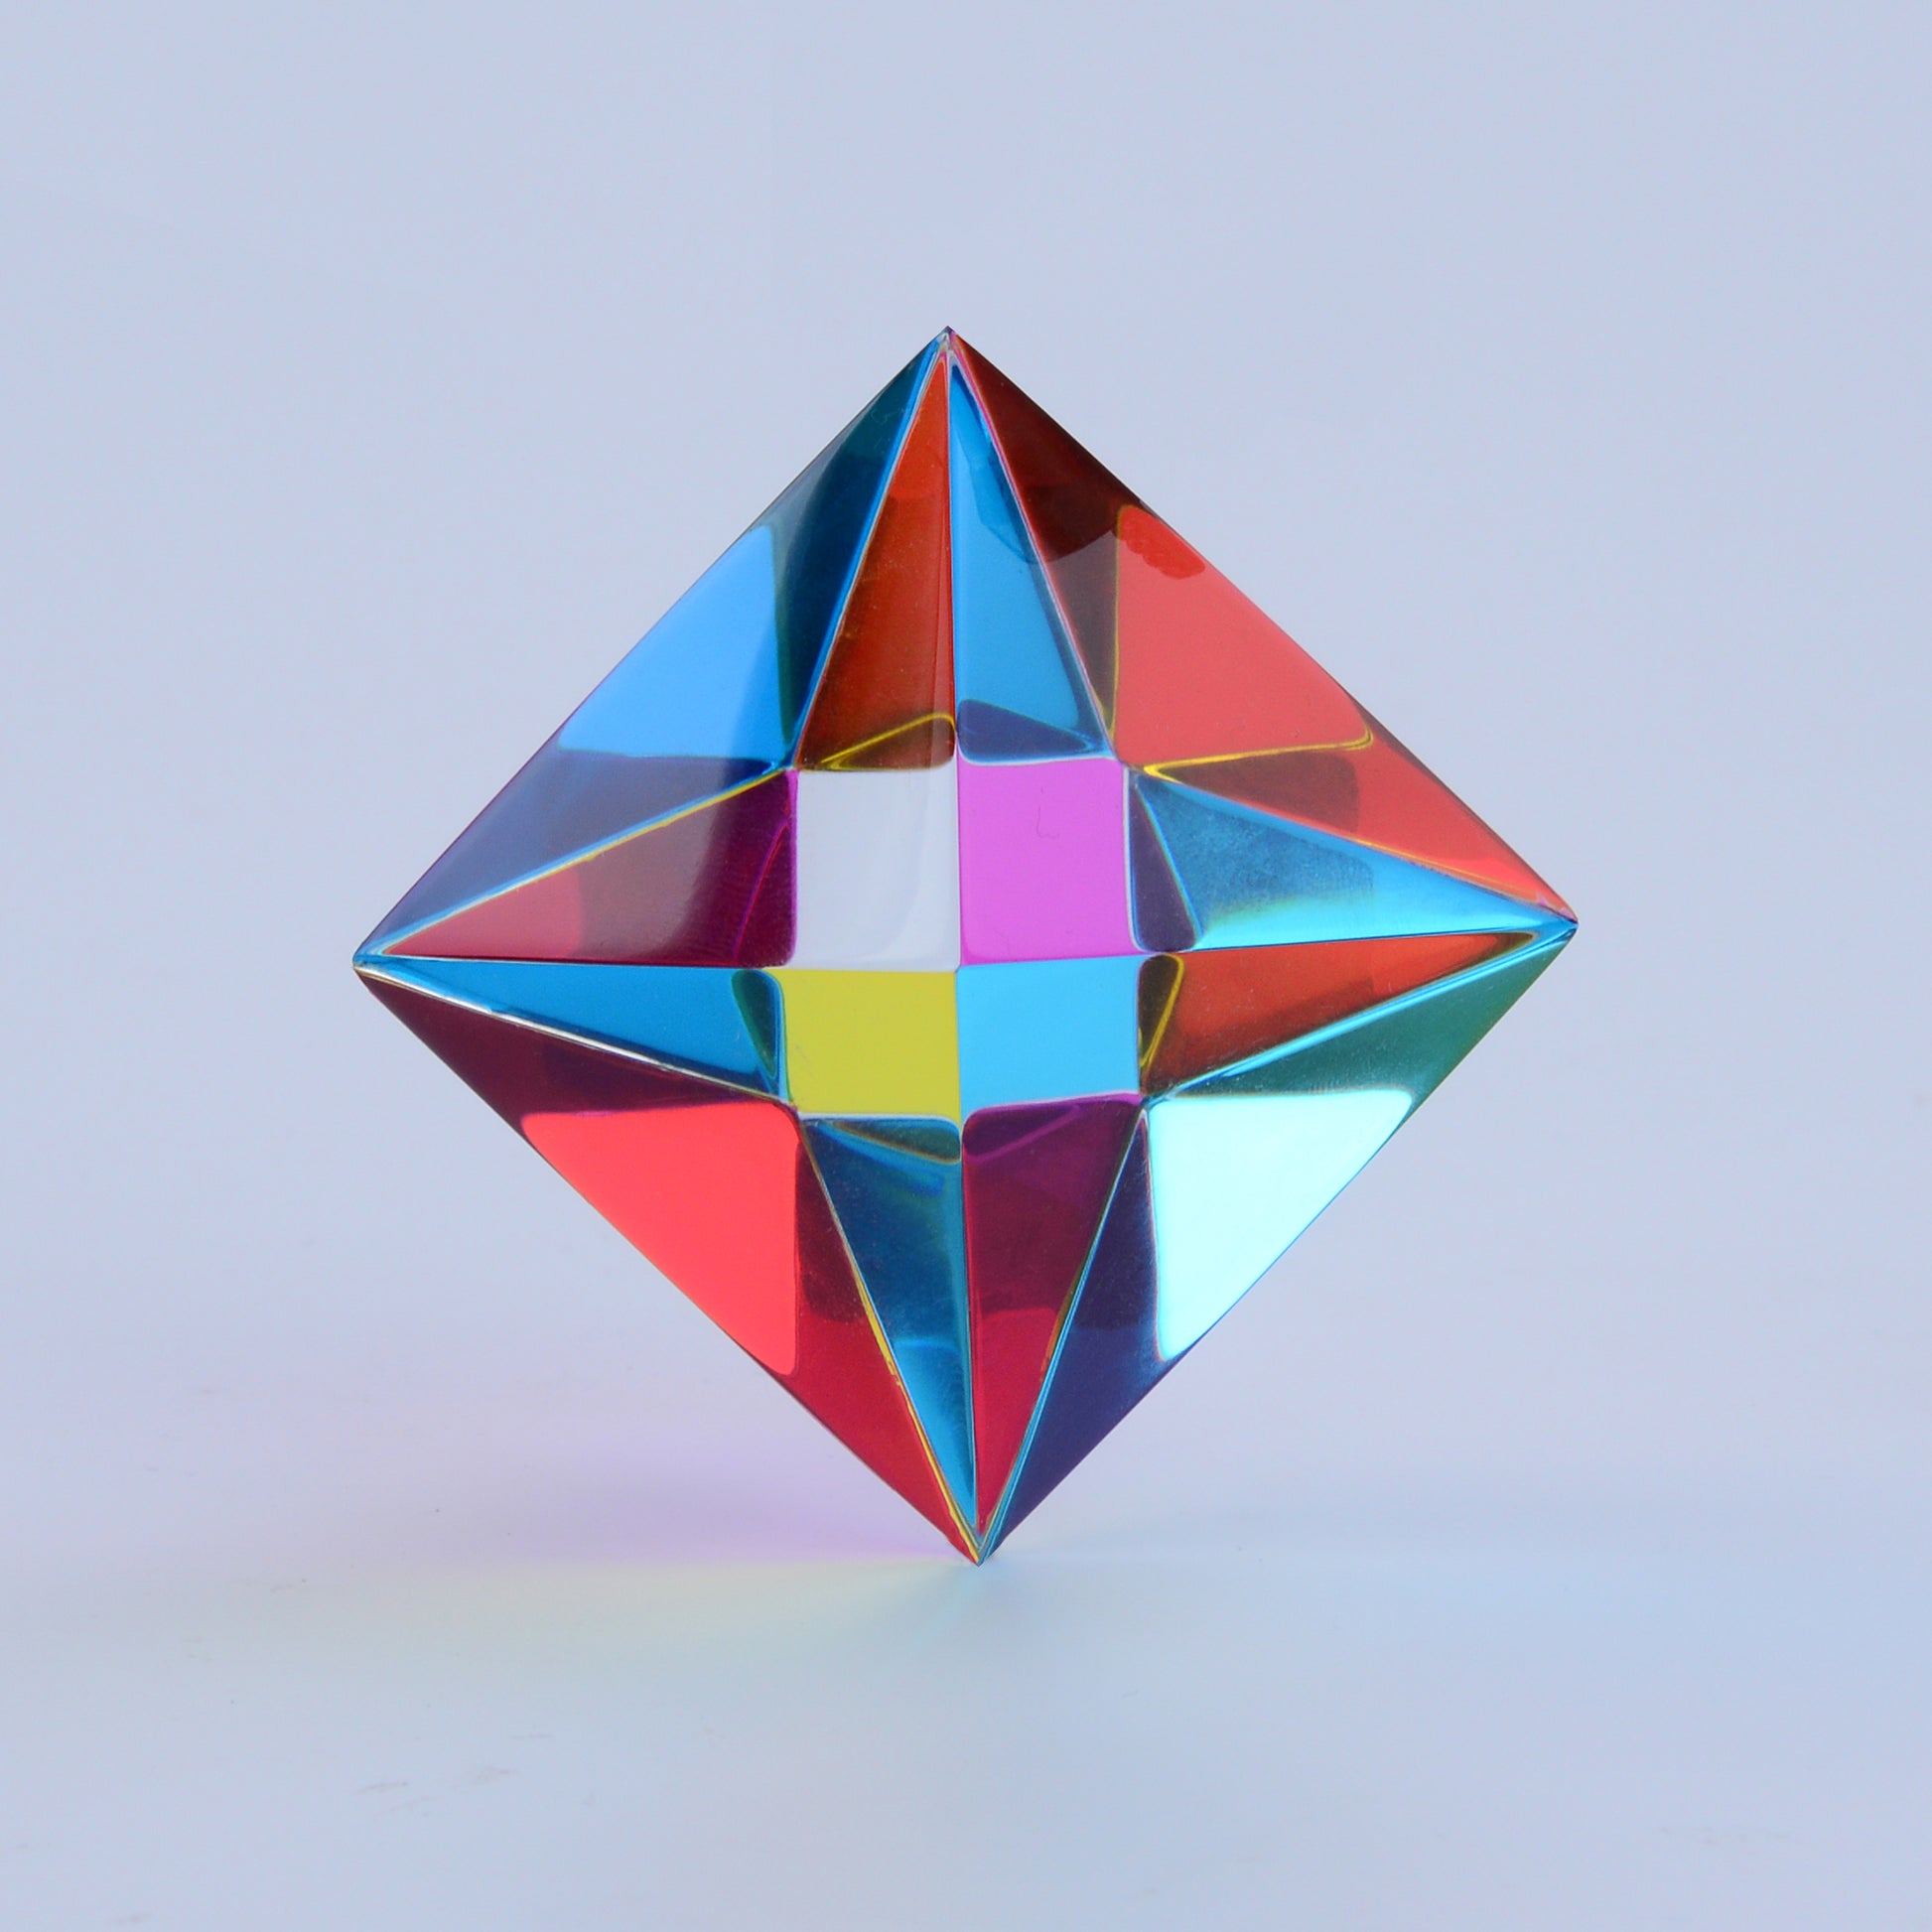 CMY OCTAHEDRON - CMY Cubes